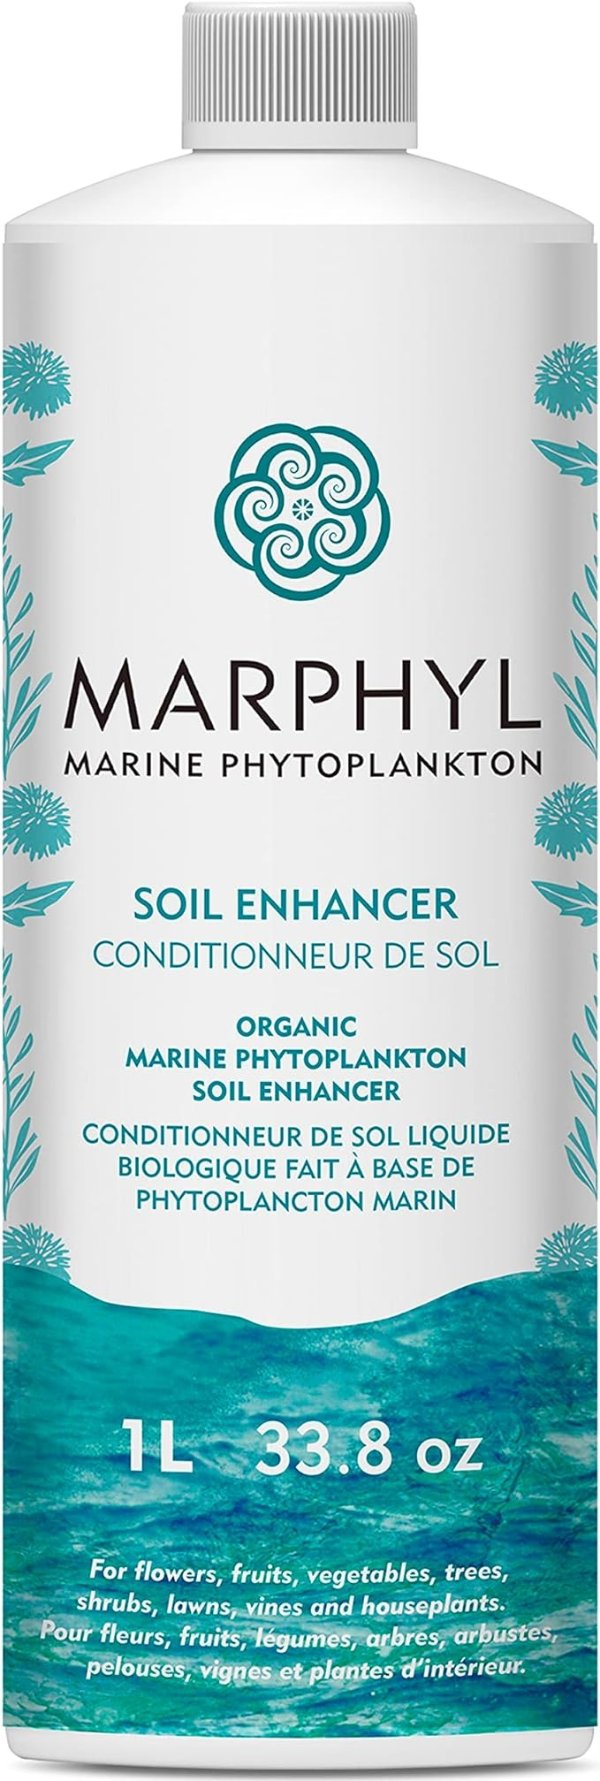 MARPHYL 有机液体土壤增强剂